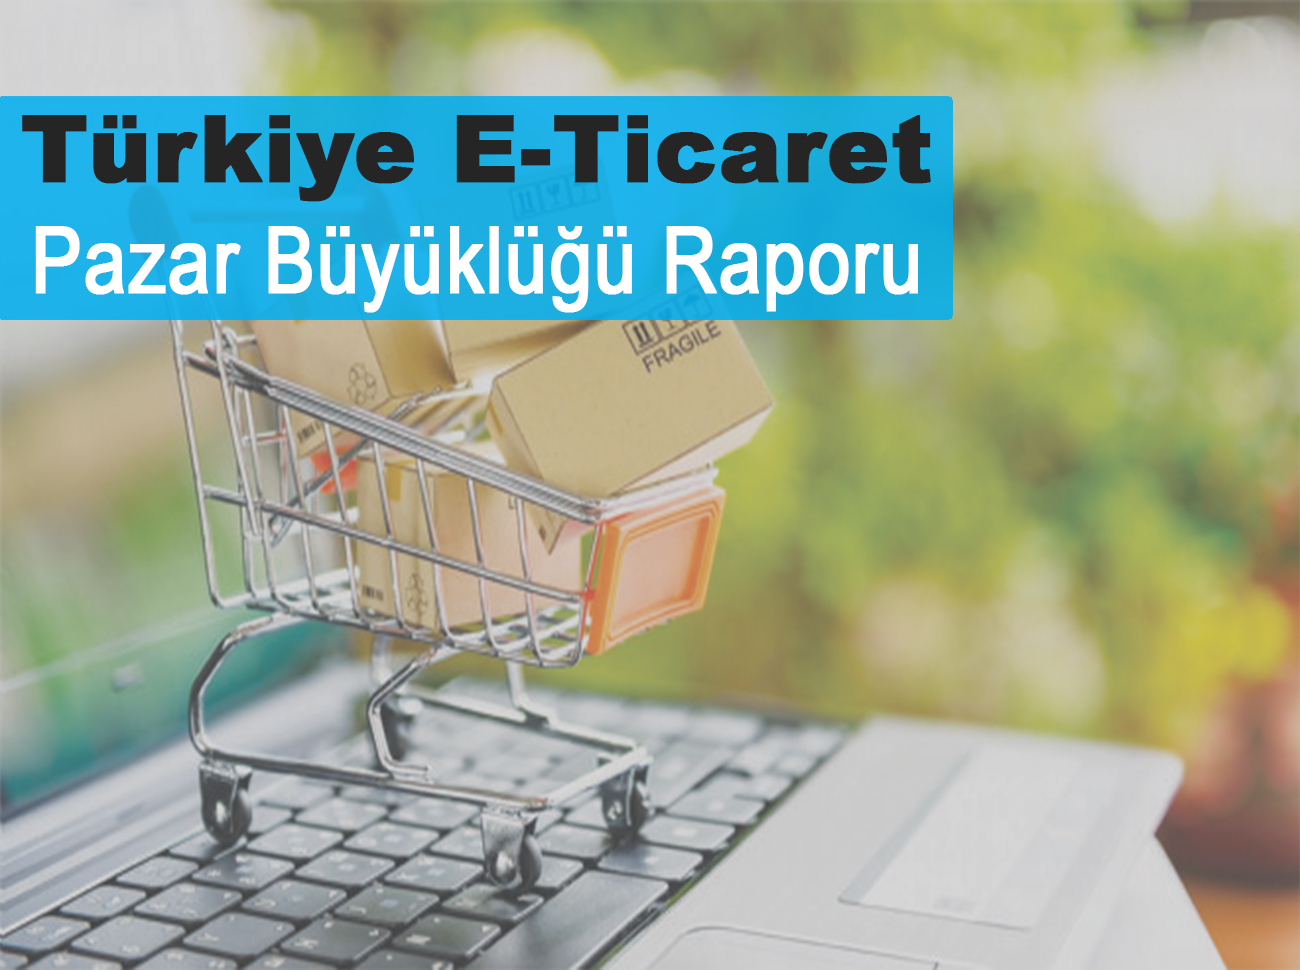 Türkiye e-Ticaret Pazar Büyüklüğü Raporu